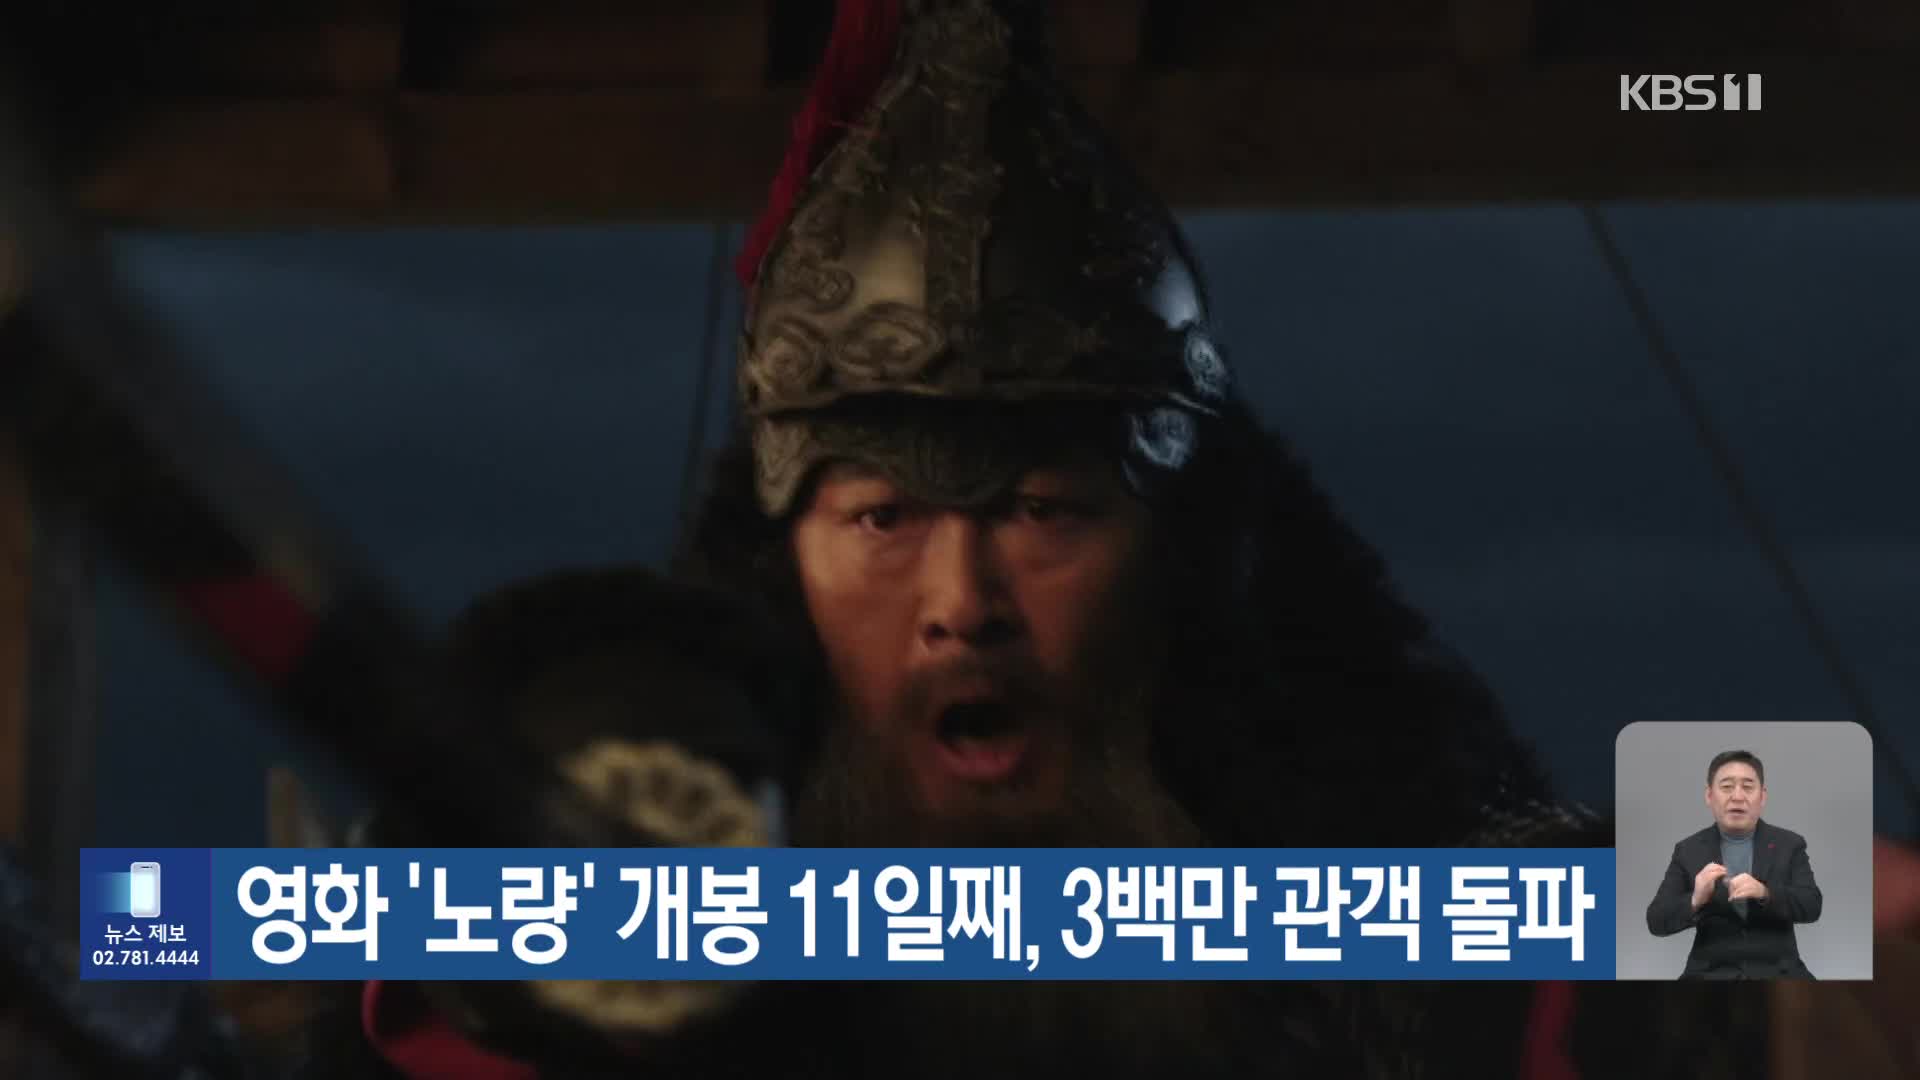 영화 ‘노량’ 개봉 11일째, 3백만 관객 돌파